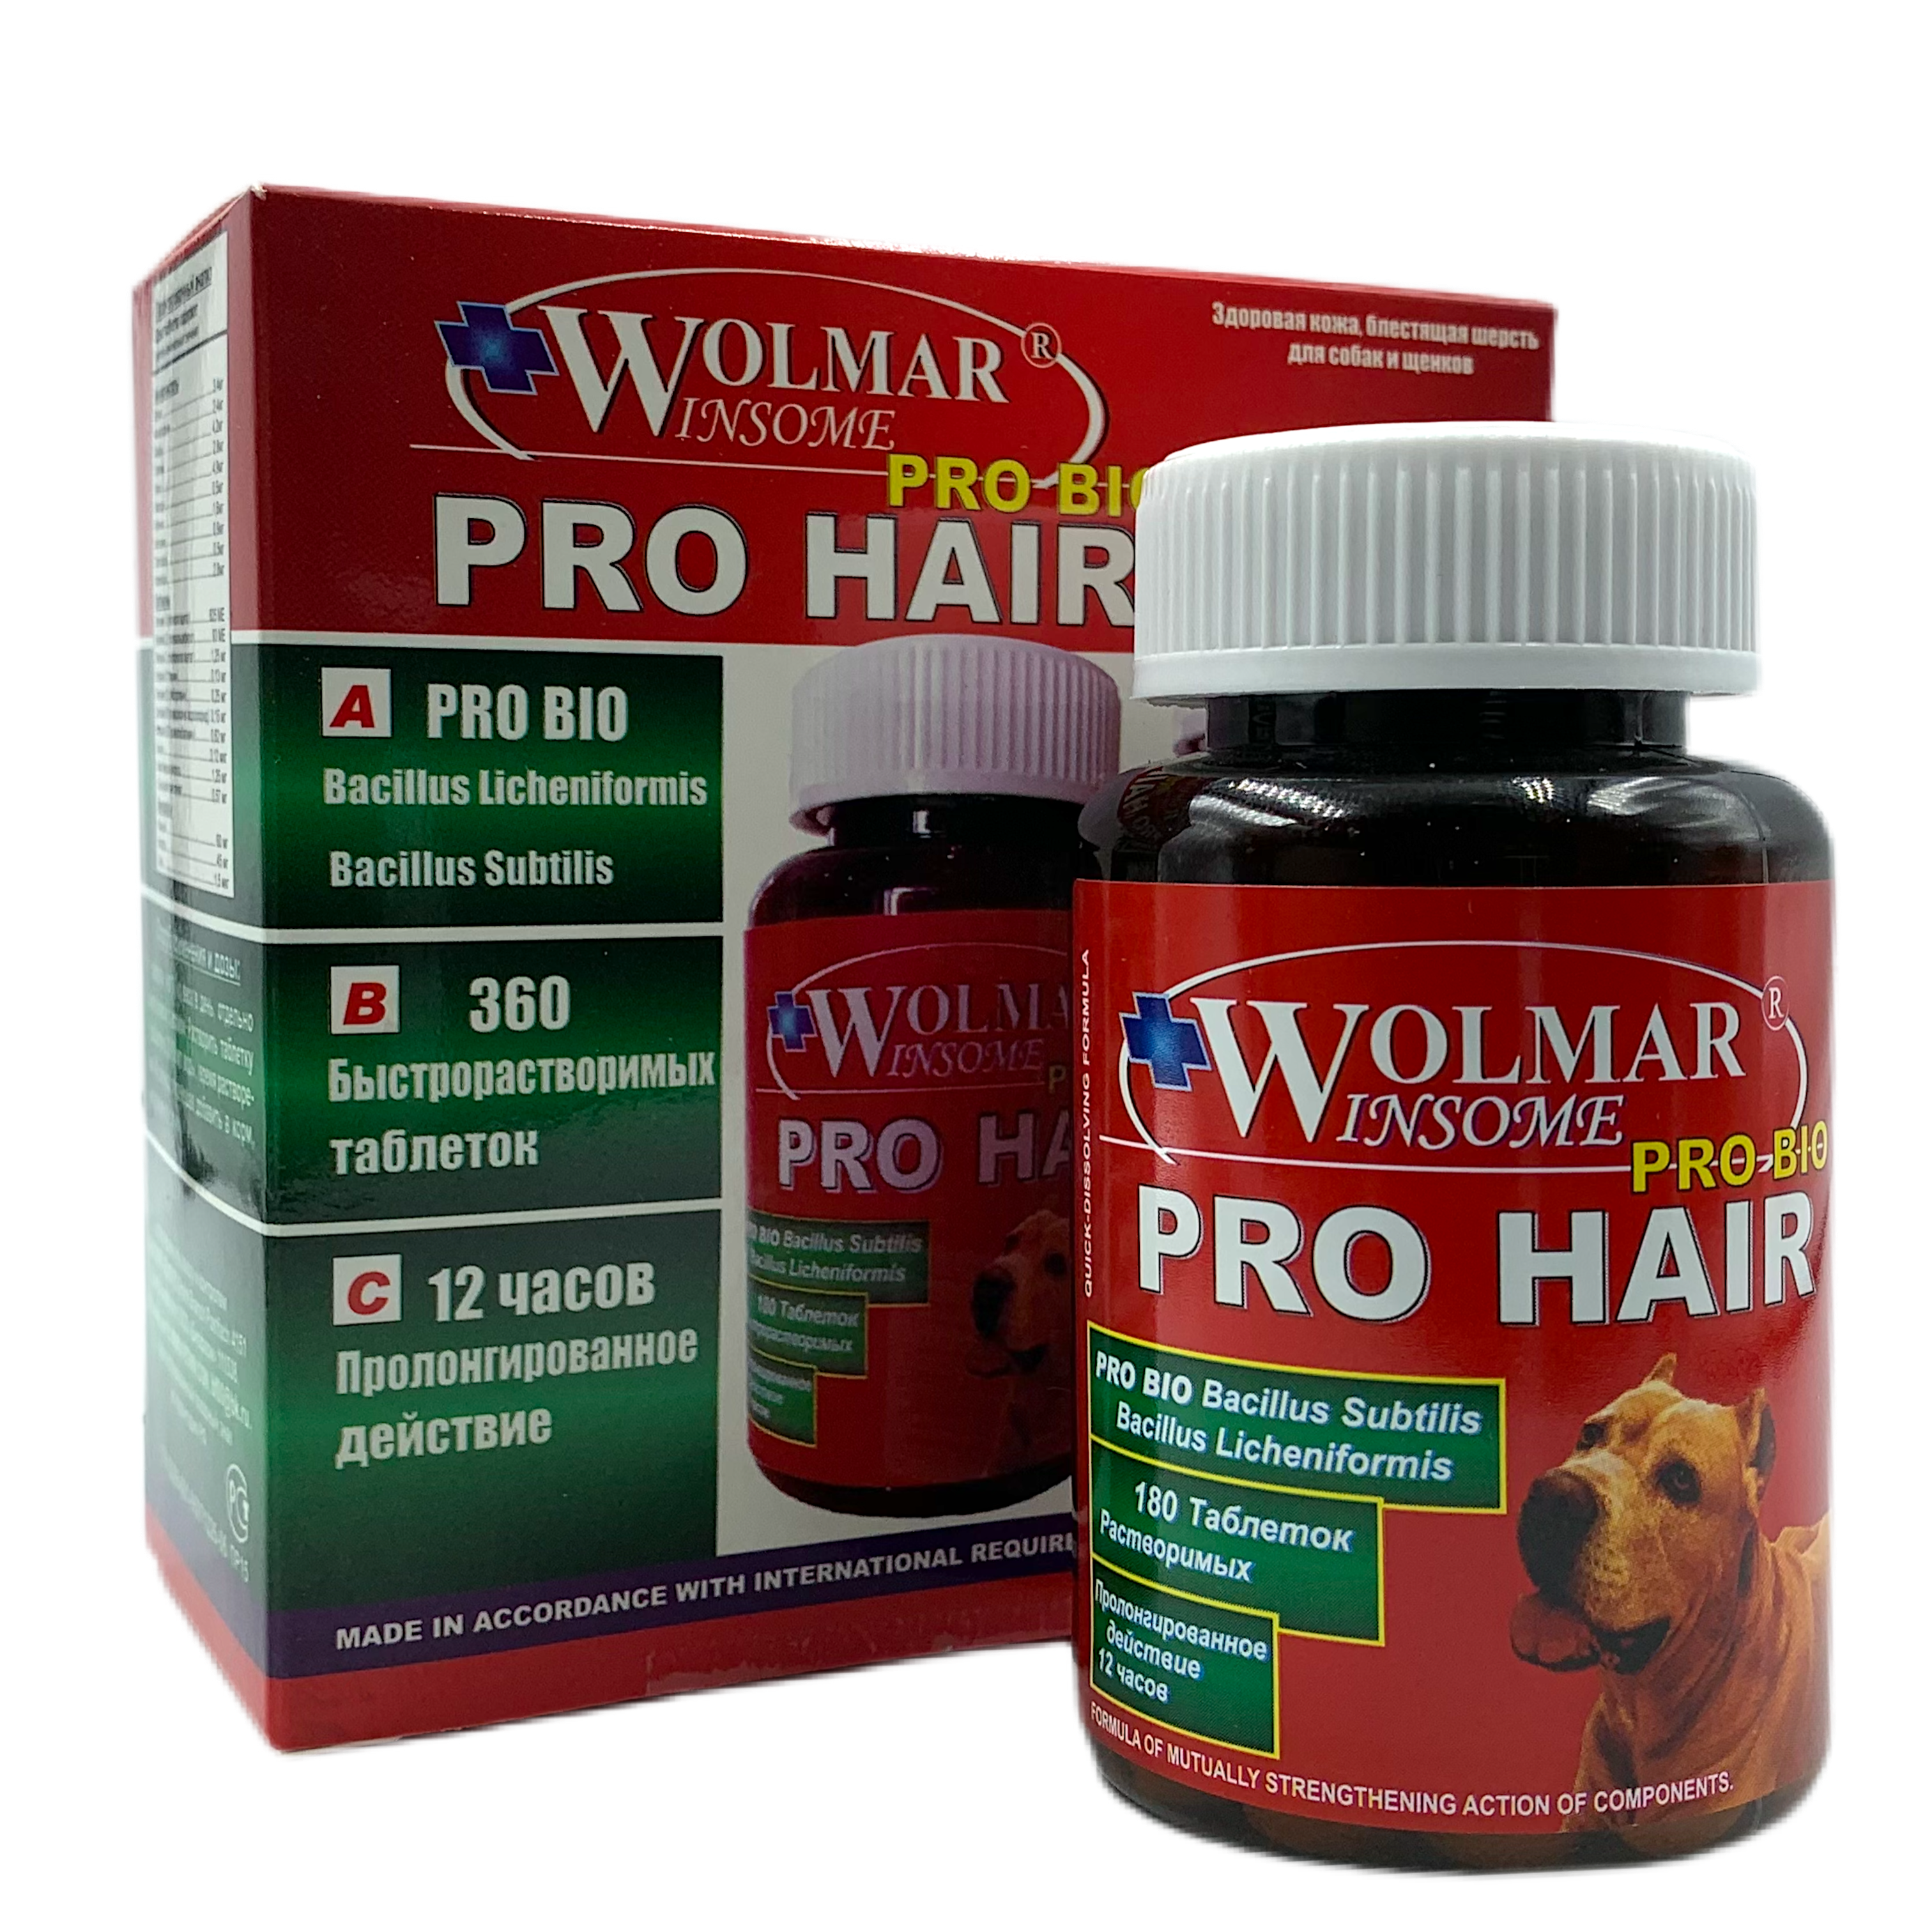 WOLMAR WINSOME® PRO BIO PRO HAIR - для щенков старше 1,5 месяцев и взрослым собакам с целью улучшения состояния кожи и шерсти